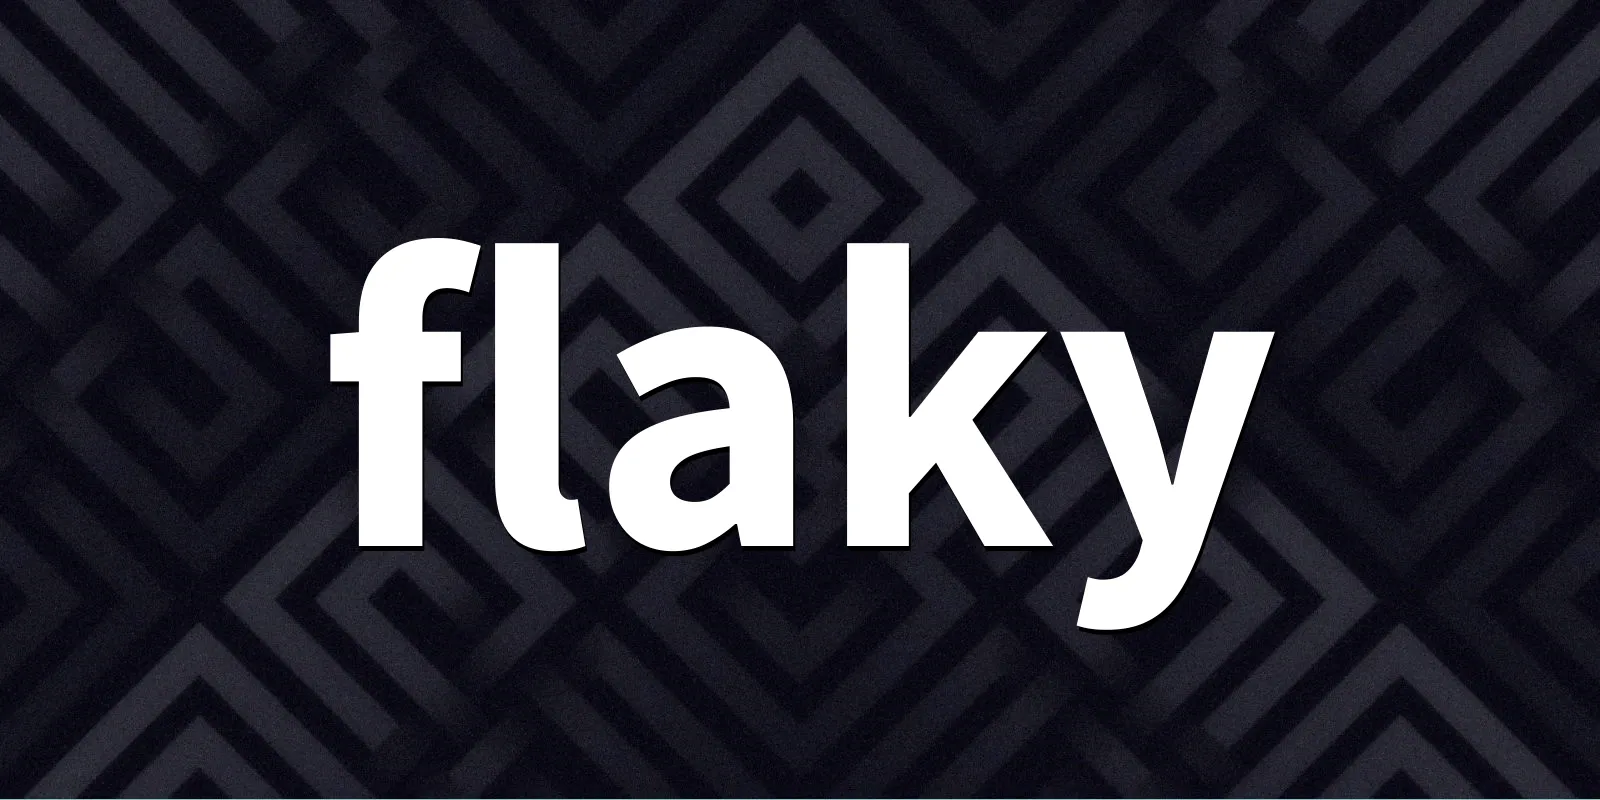 /pkg/f/flaky/flaky-banner.webp